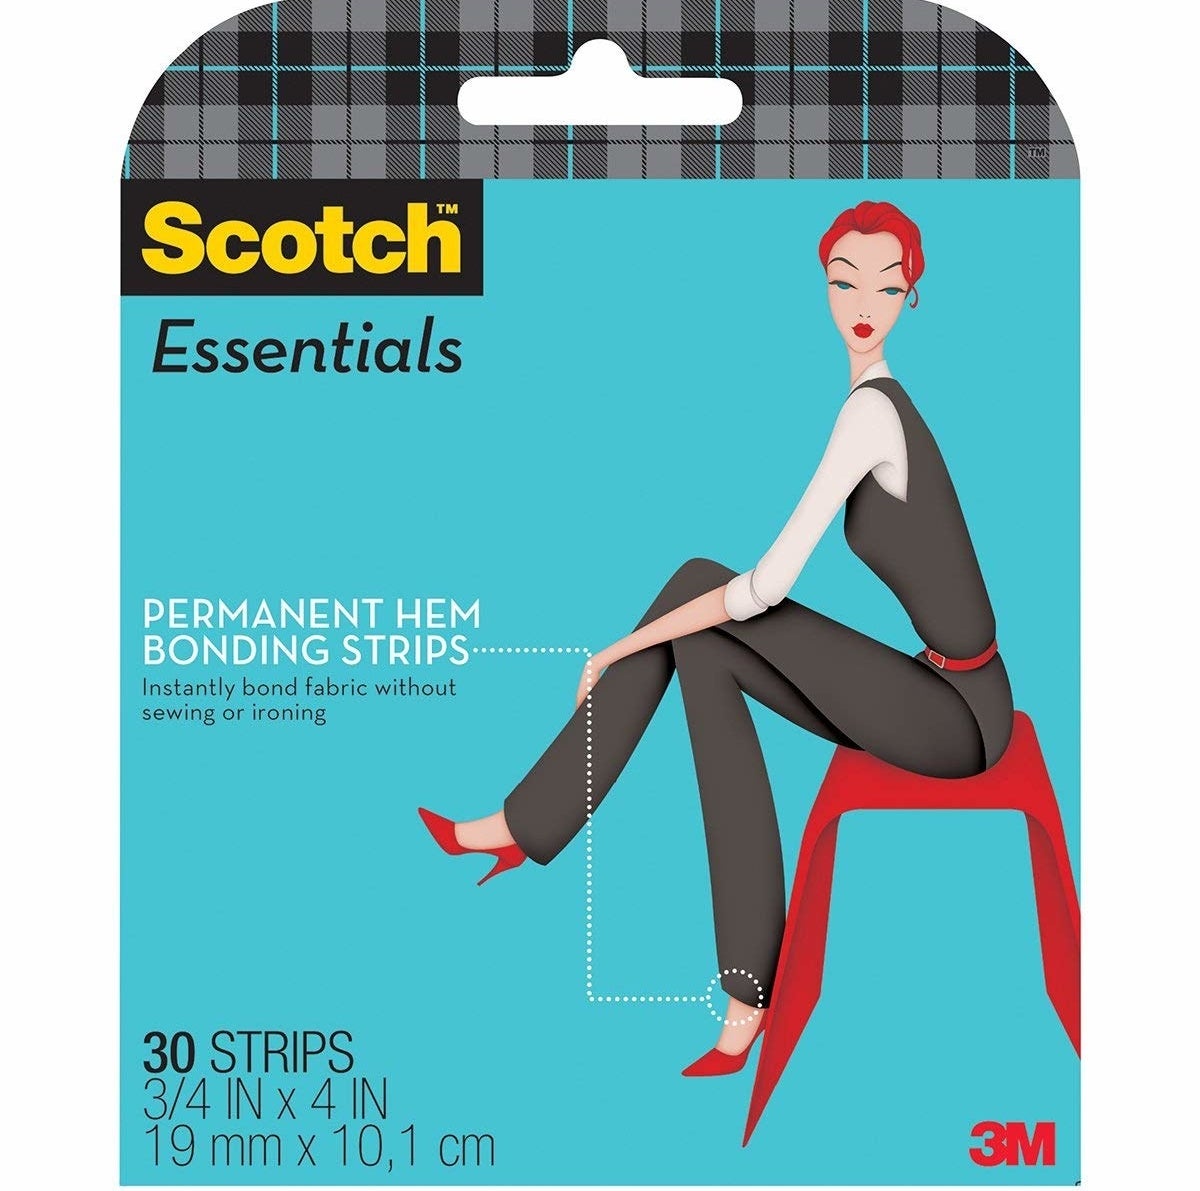 sctoch essentials hemming bond strips package